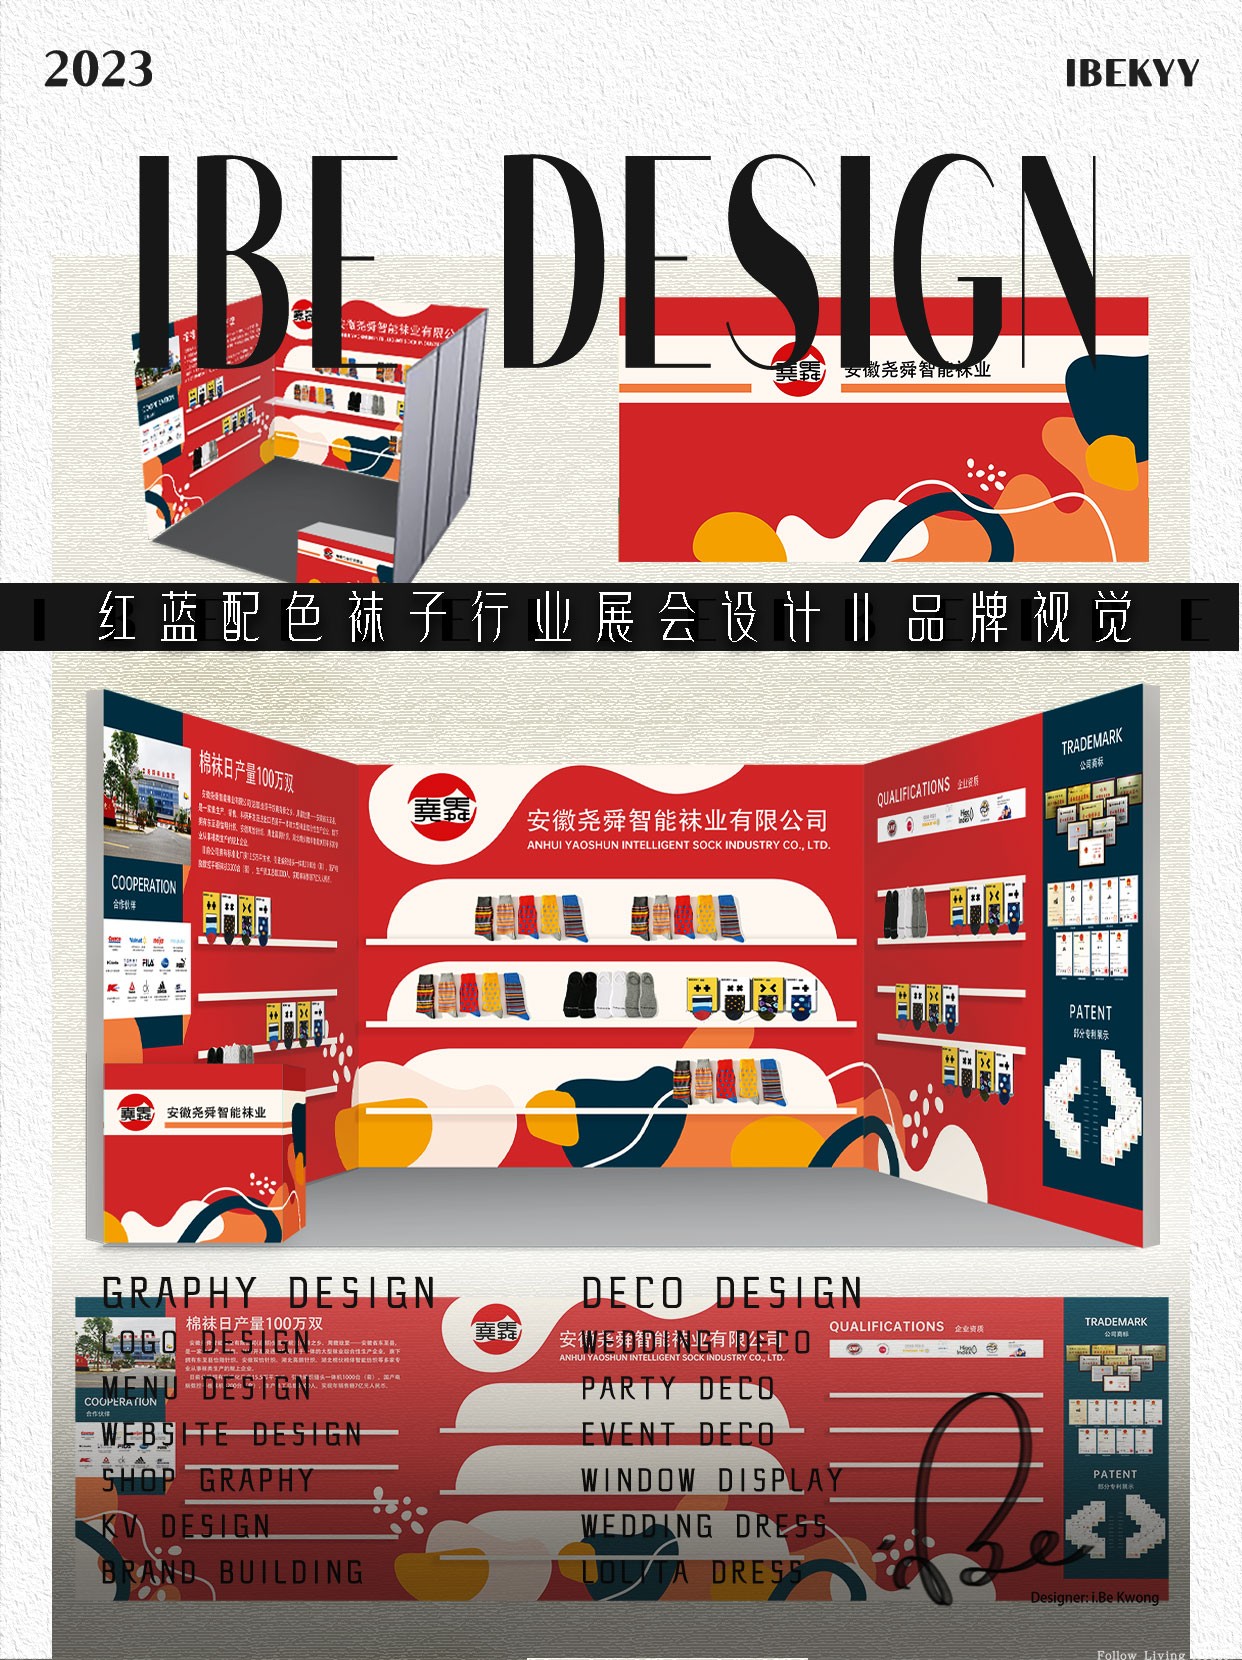 红蓝主题展会设计会展布置印刷海报展位布置品牌设计